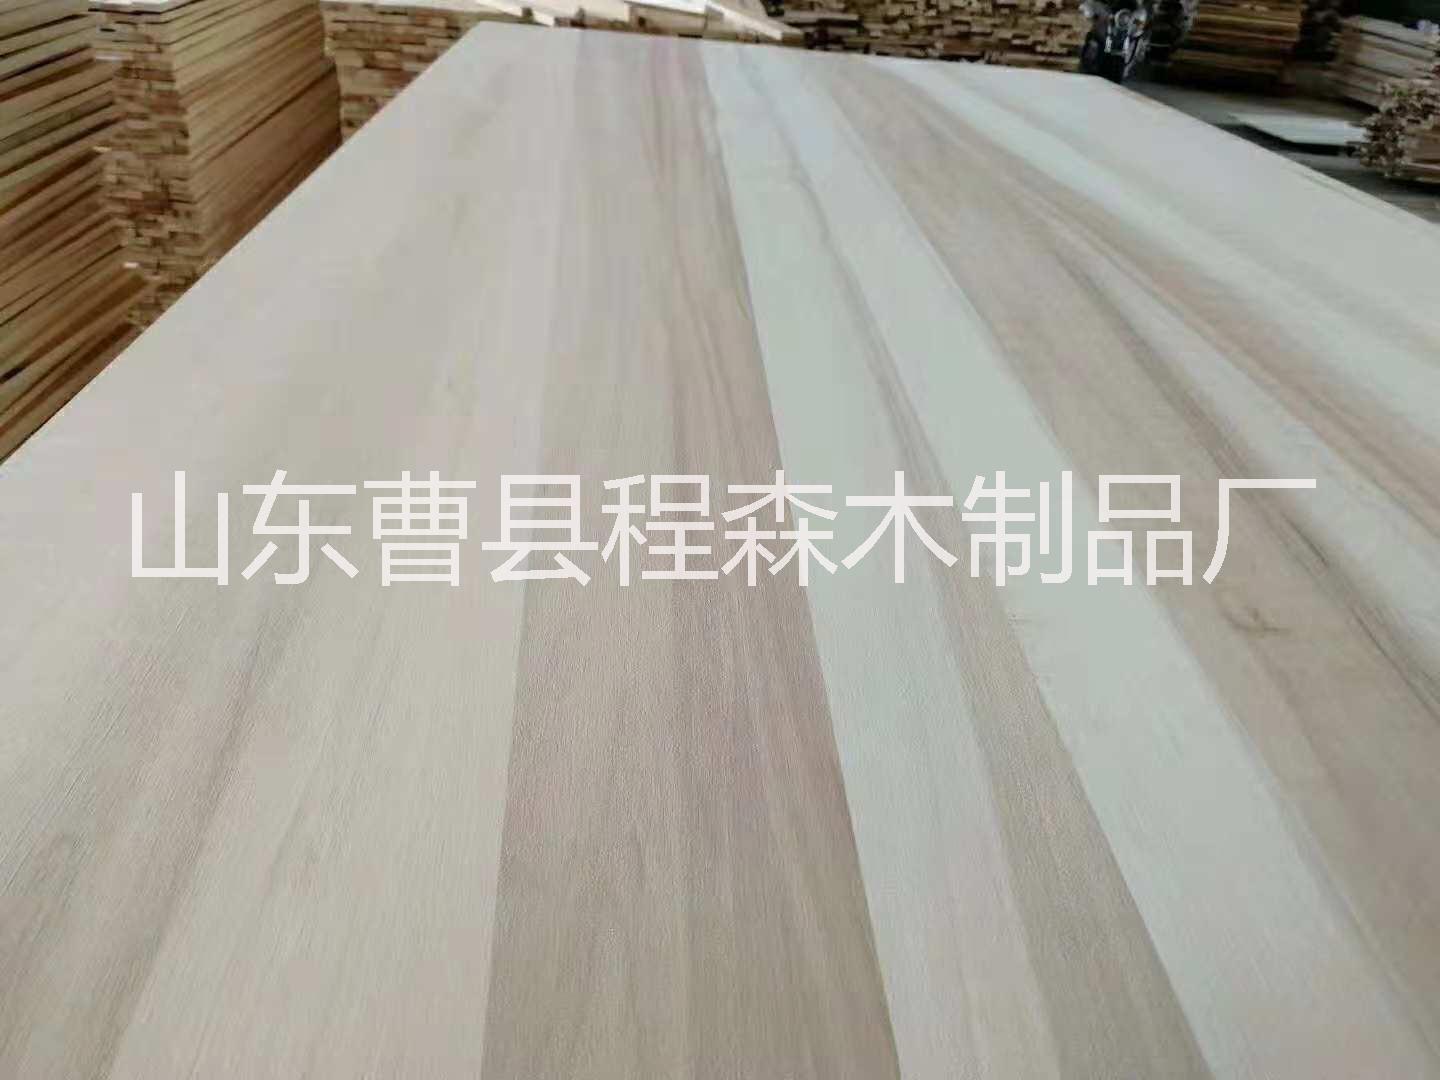 杨木拼板、四川杨木拼板生产厂家直销、四川杨木拼板批发价格，杨木拼板供应商报价